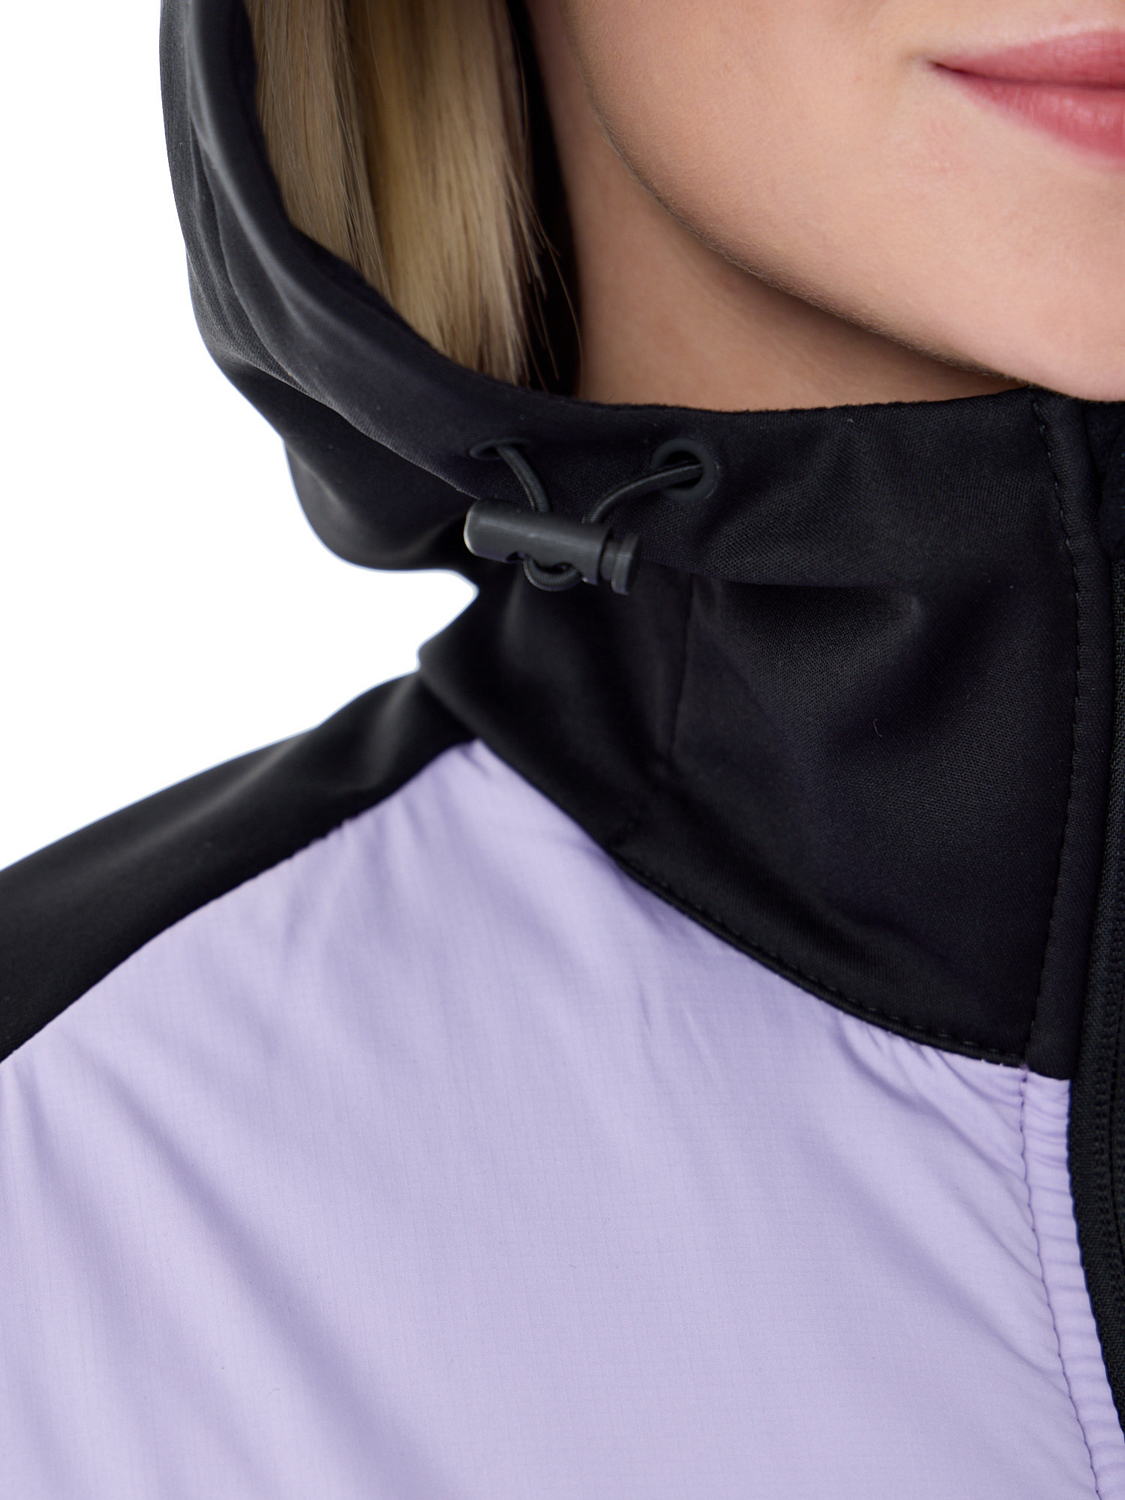 Куртка беговая Nordski Hybrid Hood W Lavender/Black